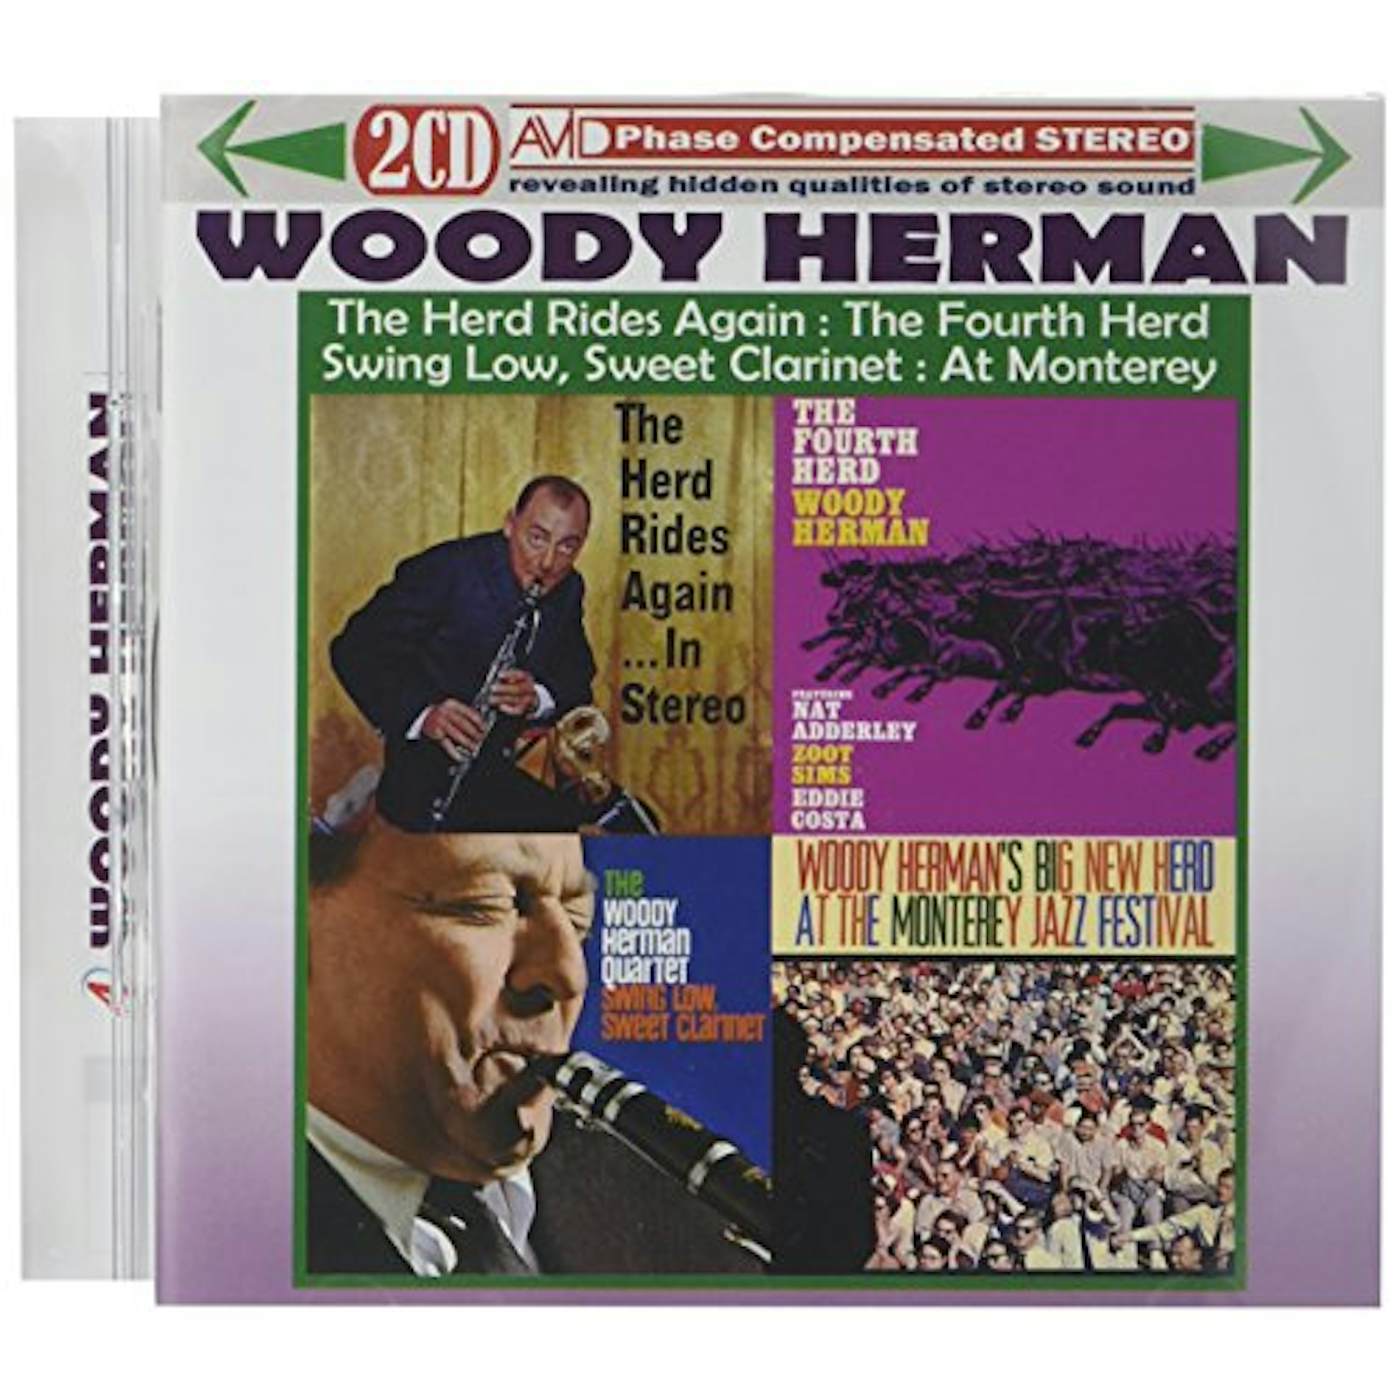 Woody Herman HERD RIDES AGAIN IN STEREO / FOURTH HERD / SWING CD